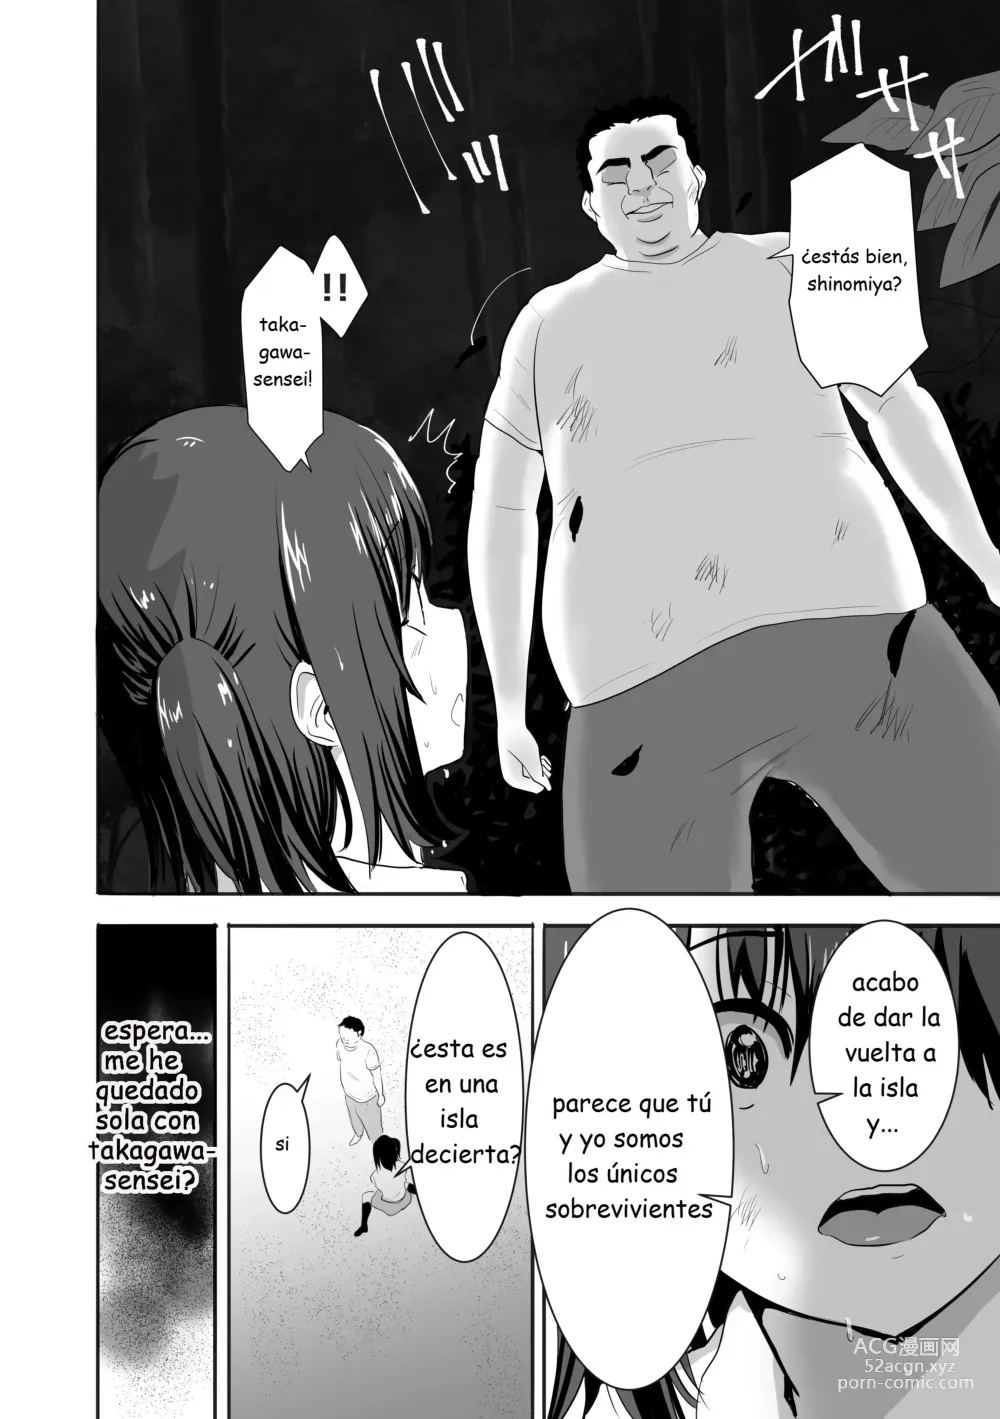 Page 5 of doujinshi Una chica con el uniforme mojada vive sola en una isla desierta con un profesor que la acosa sexualmente